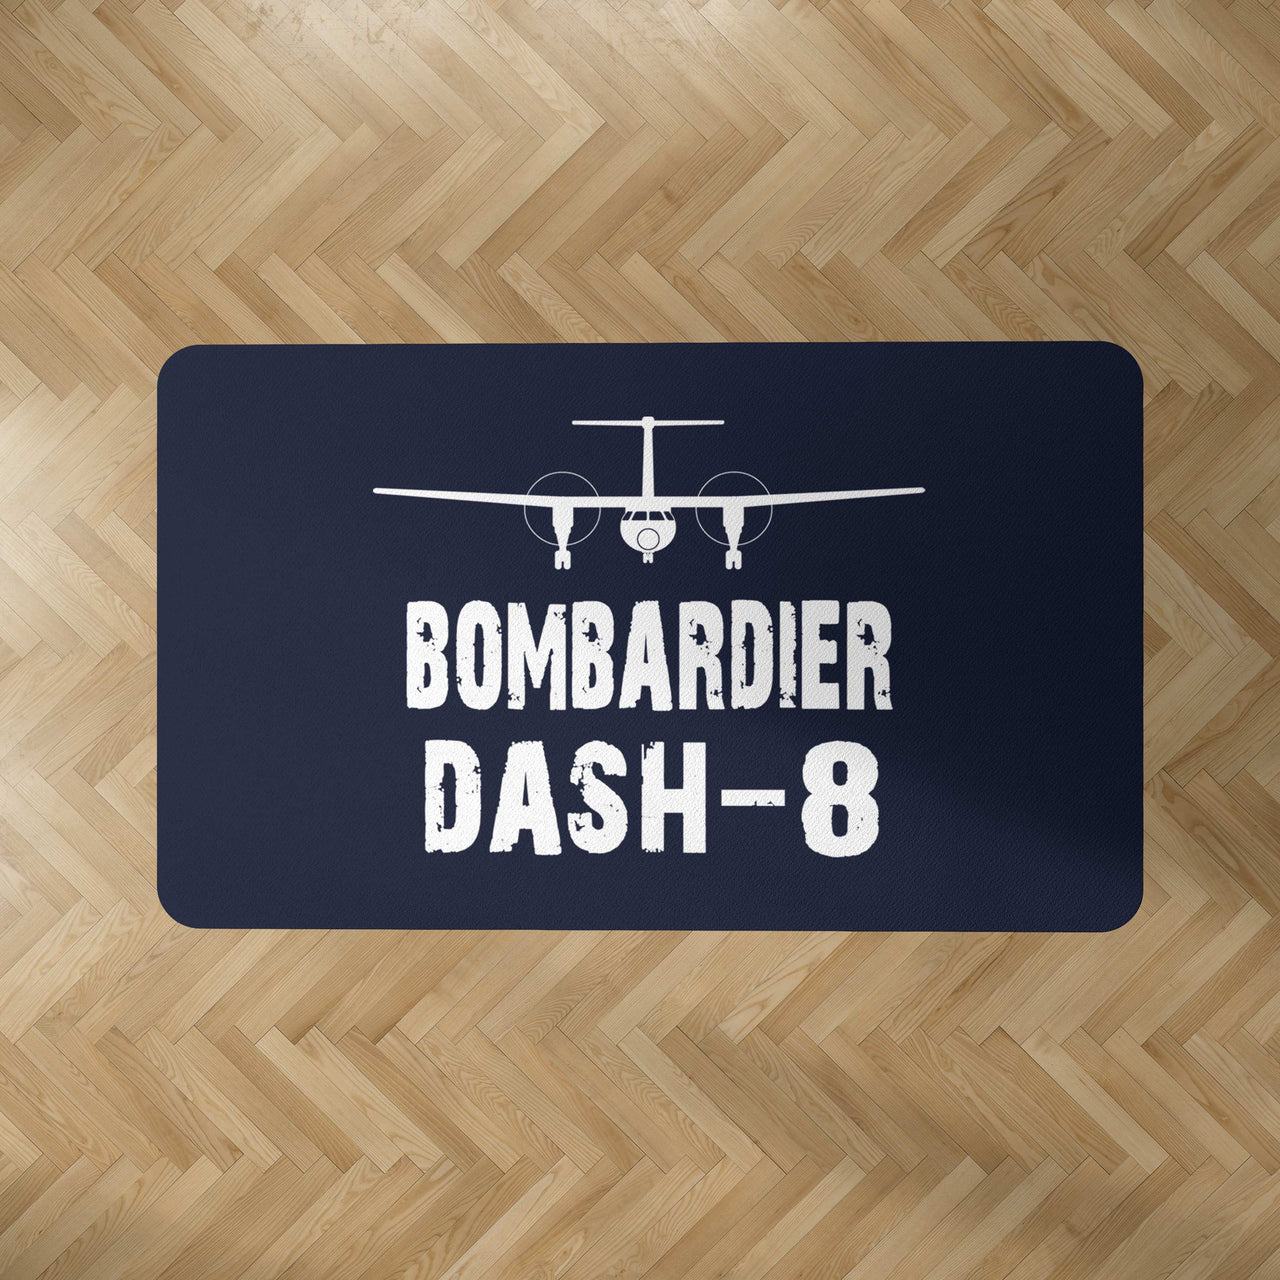 Bombardier Dash-8 & Plane Designed Carpet & Floor Mats